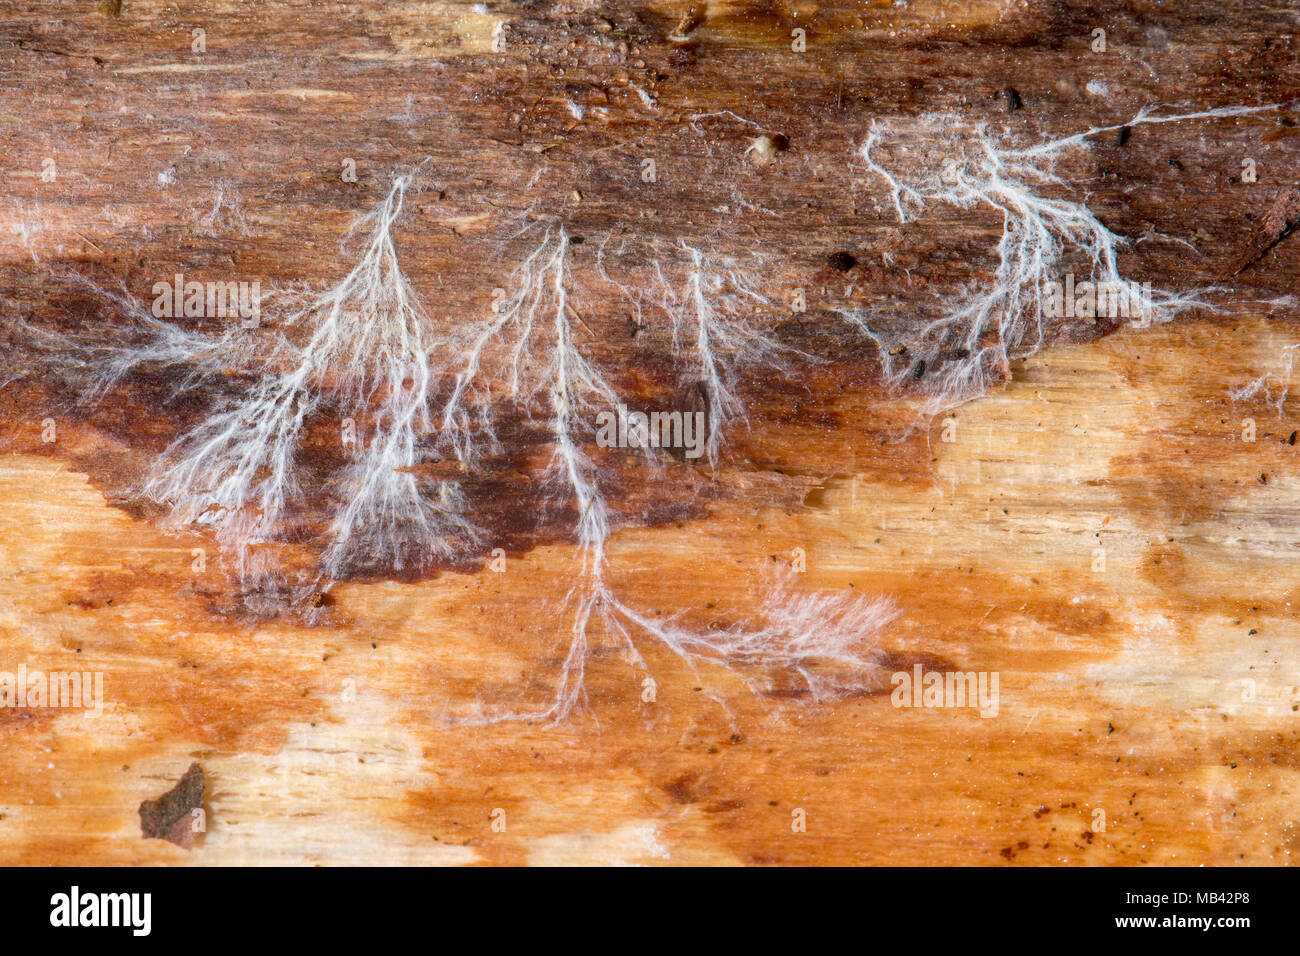 Micelio su legno morto. La ramificazione di massa della parte vegetativa del fungo, esposta rimuovendo la corteccia di conifere morto log Foto Stock